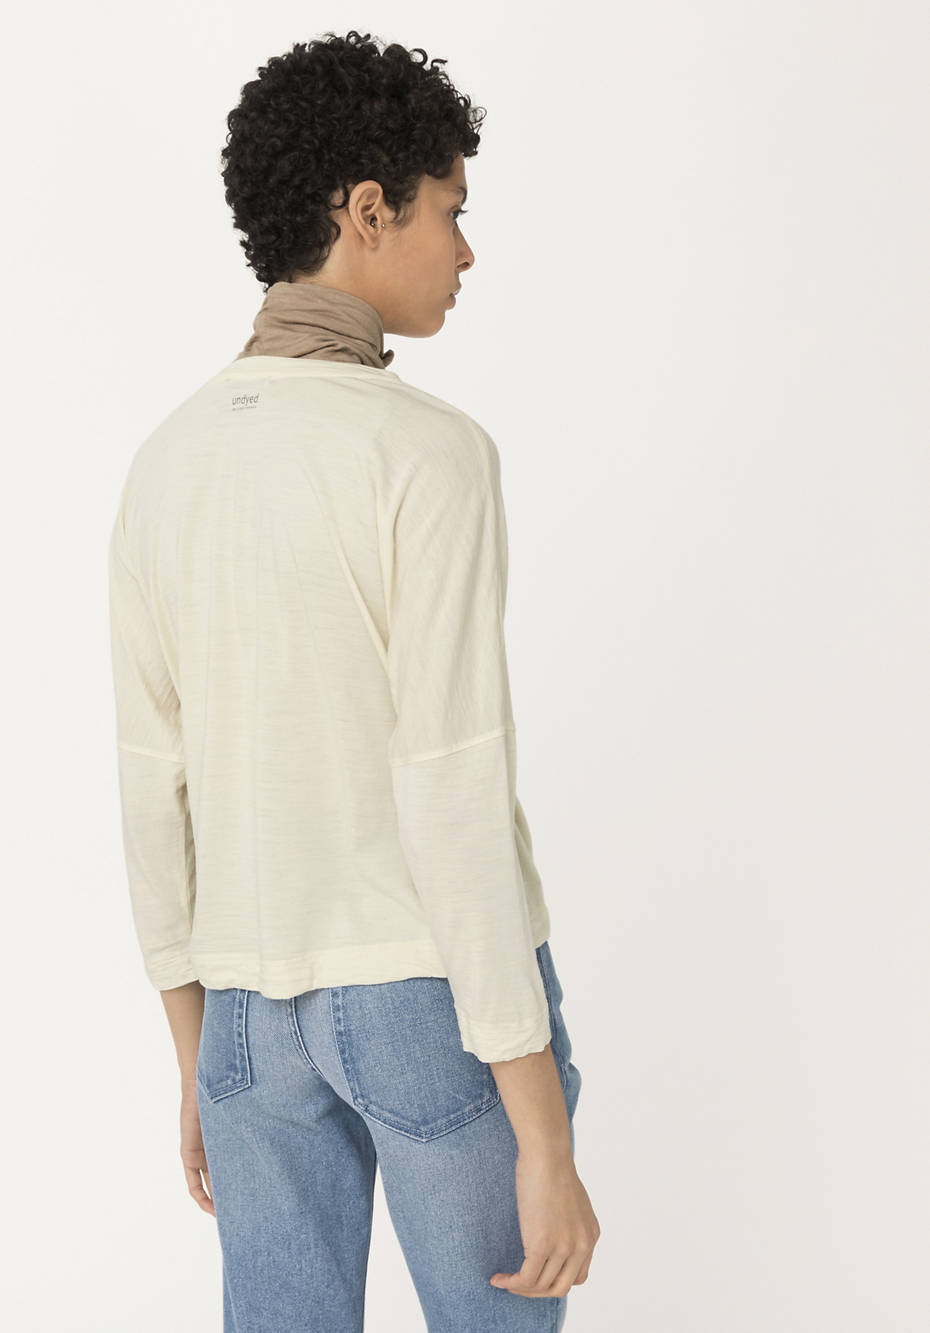 Shirt made of organic merino wool with silk